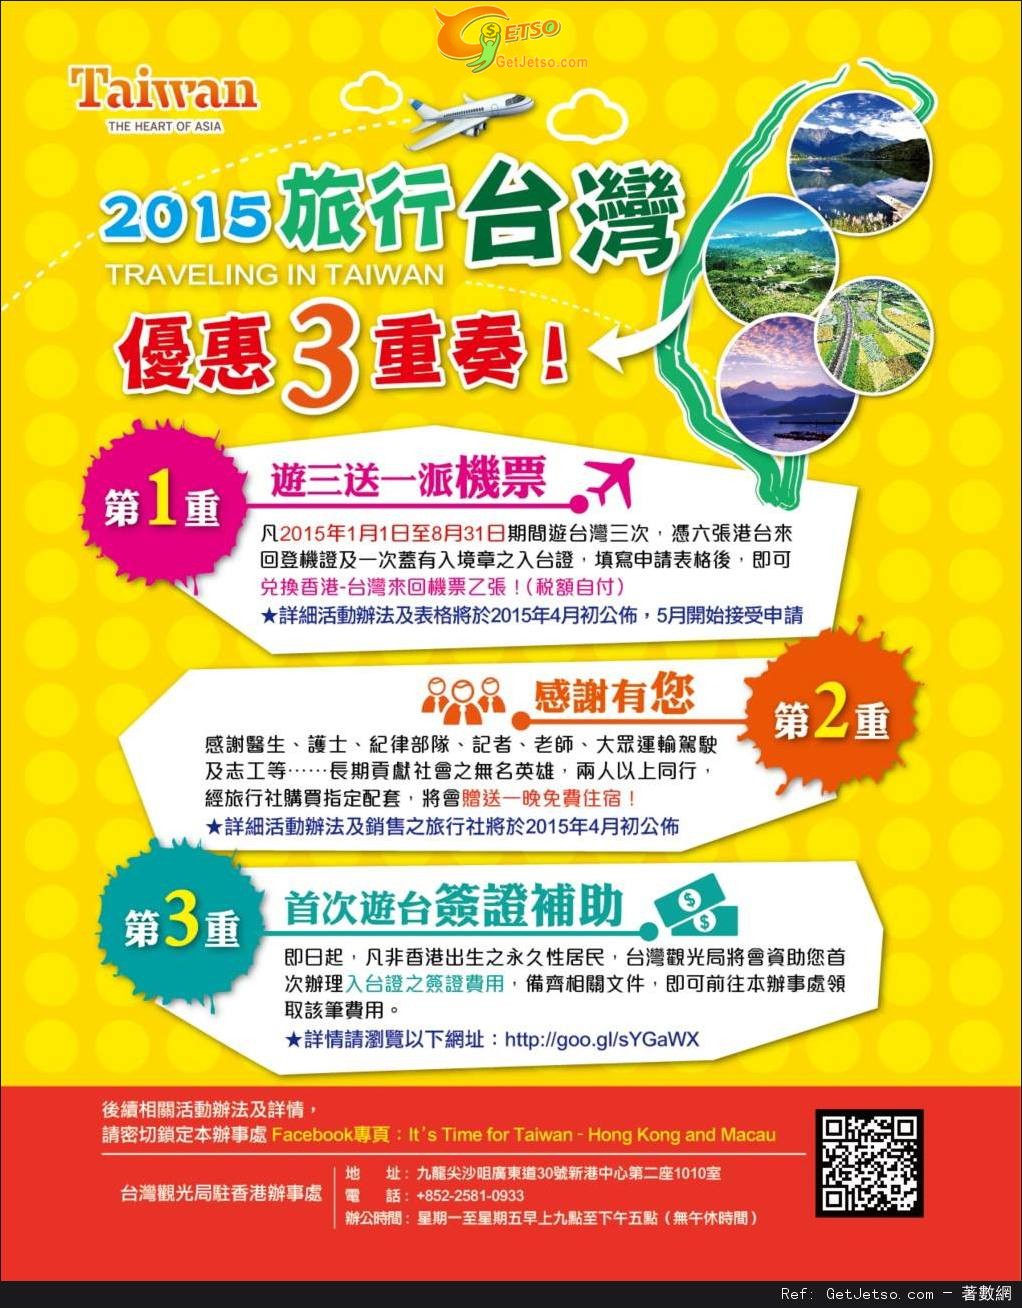 2015旅遊台灣優惠三重奏(至15年11月30日)圖片1